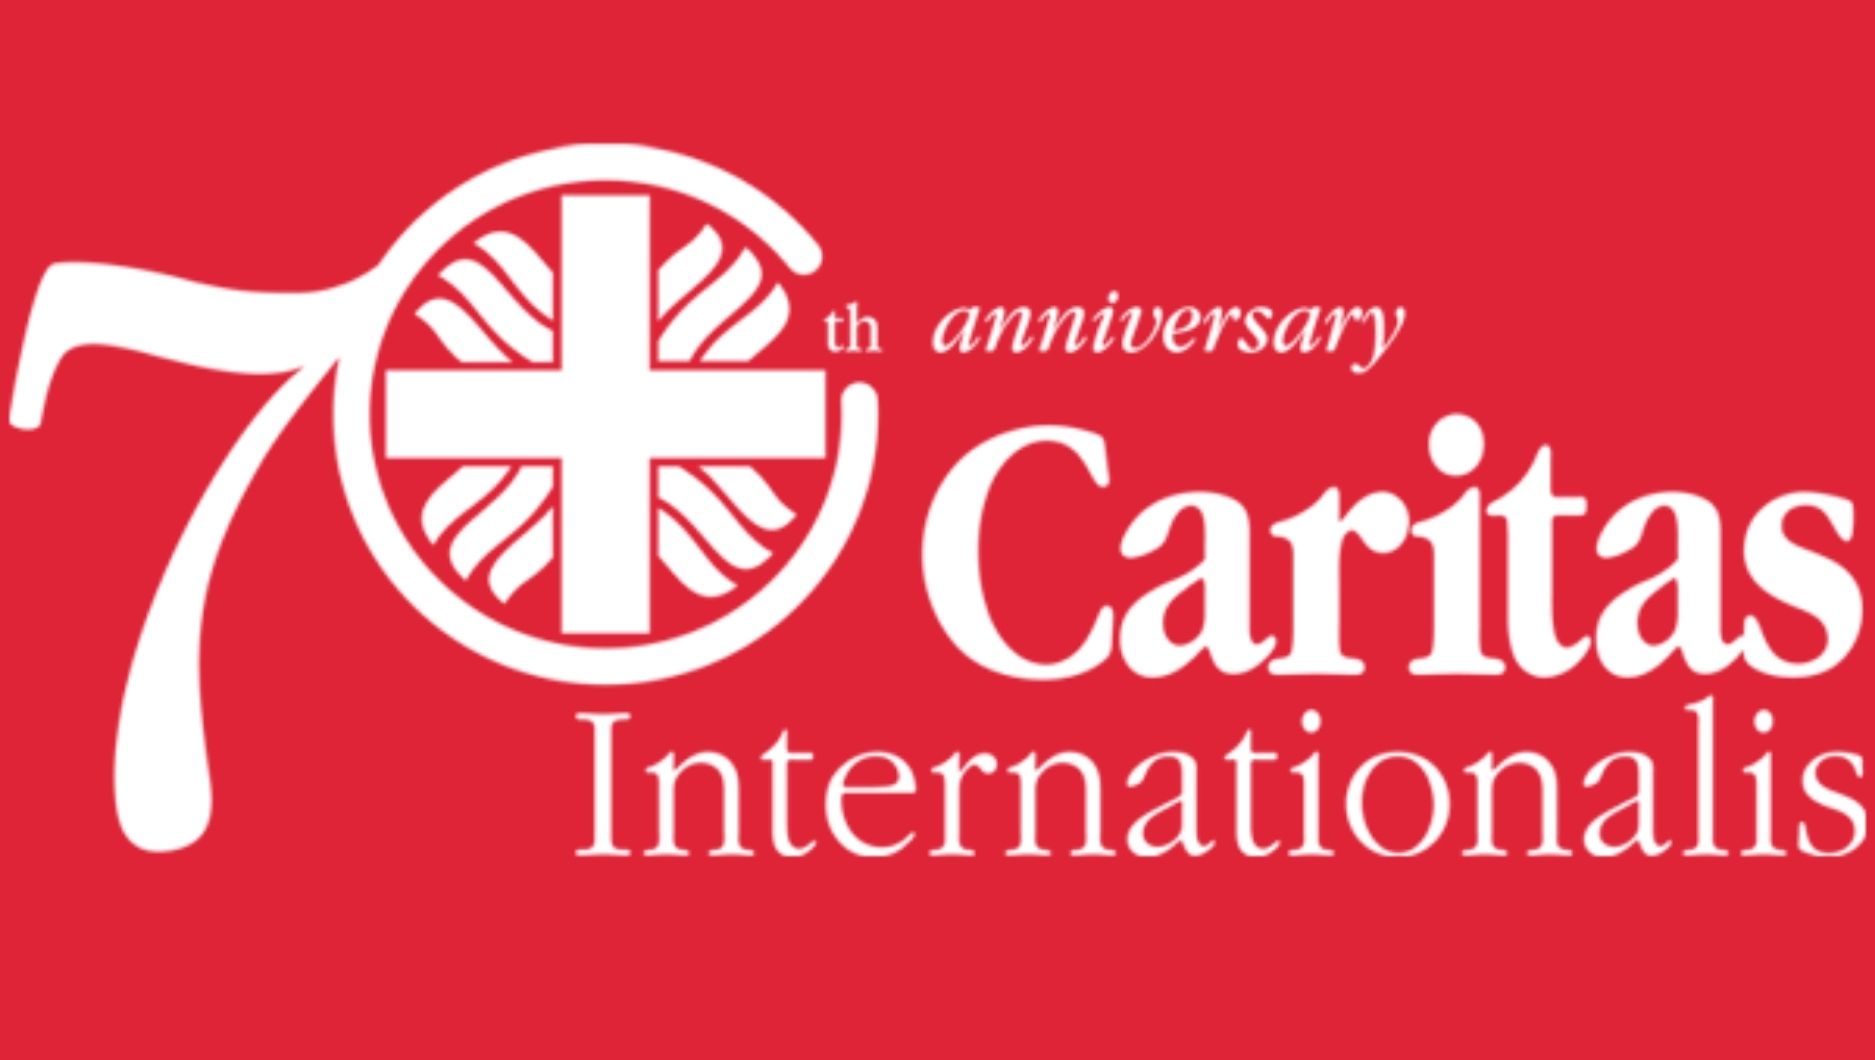  Aniversarea Caritas Internationalis la 70 ani